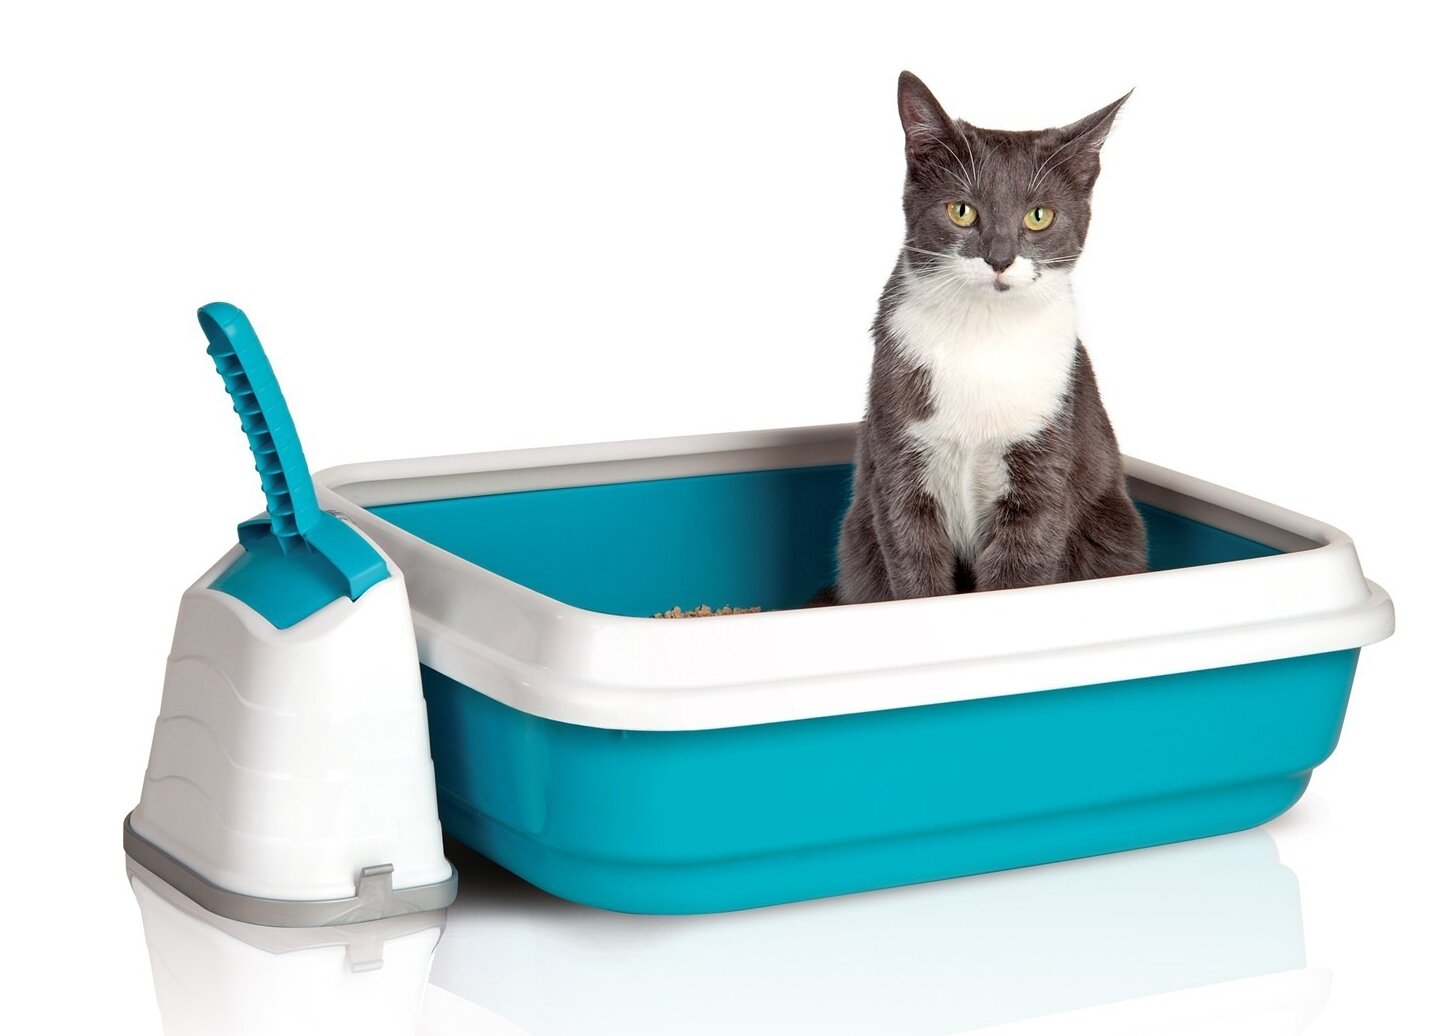 Аксессуары для лотка. IMAC Duo лоток для кошек. Туалет для кошек Cat Litter. Лоток открытый IMAC Duo. Наполнитель для кошачьего туалета.